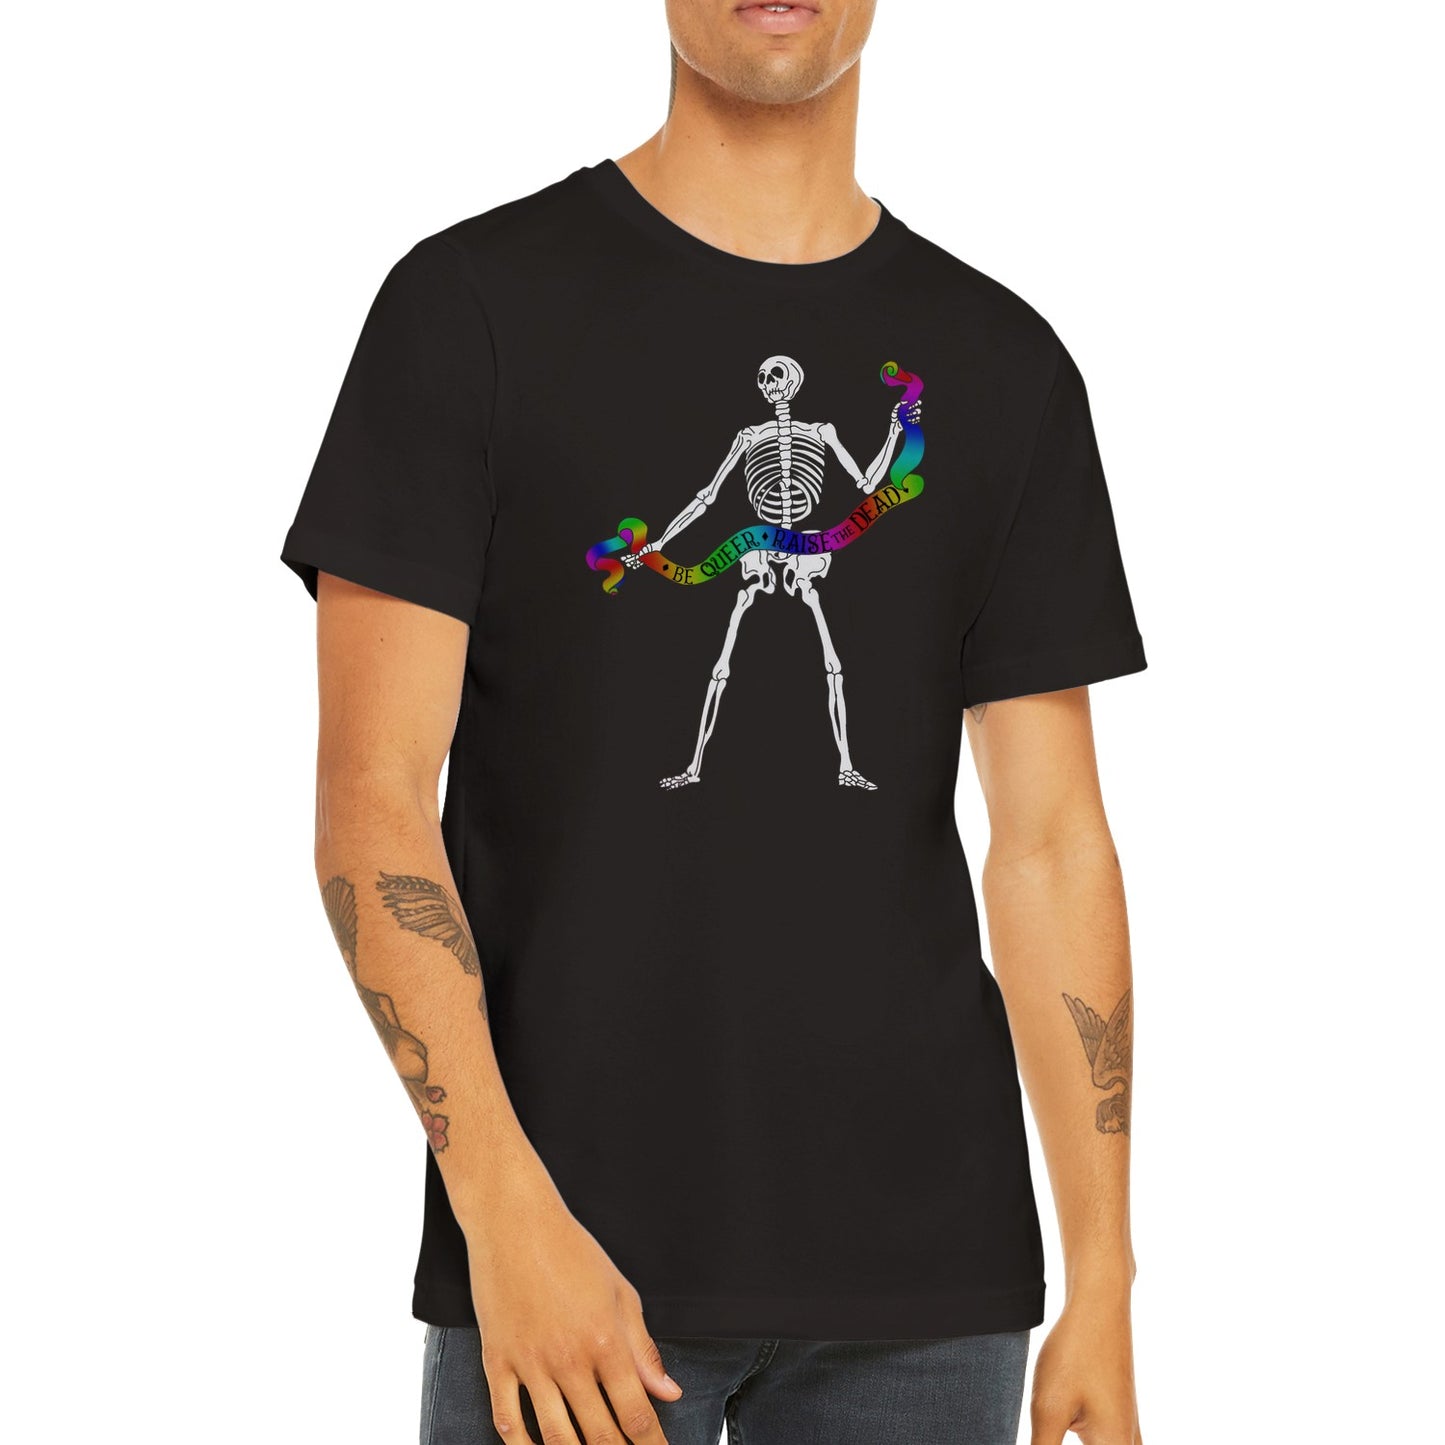 Be Queer, Raise the Dead- Premium Unisex Crewneck T-shirt